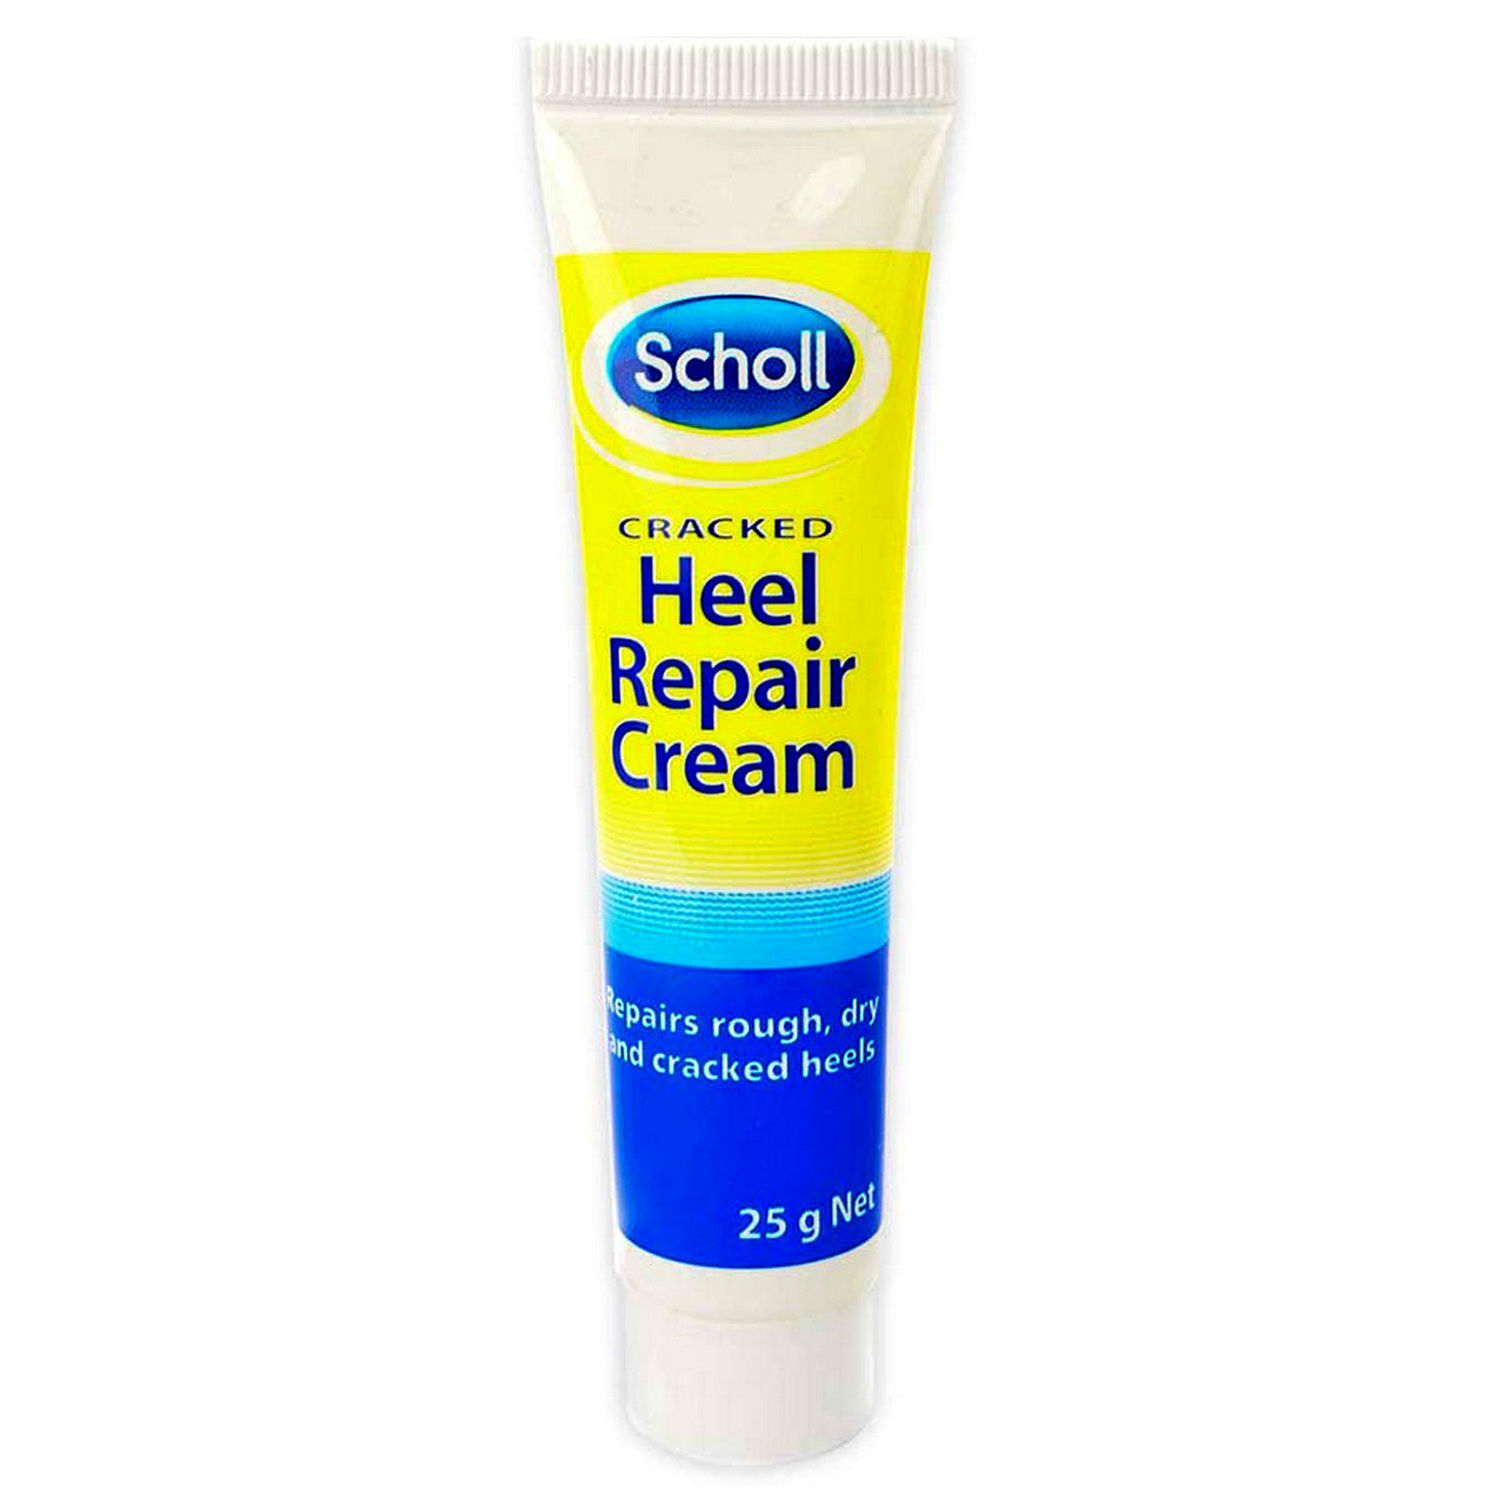 Buy Scholl Cracked Heel Repair Cream, 25 gm Online